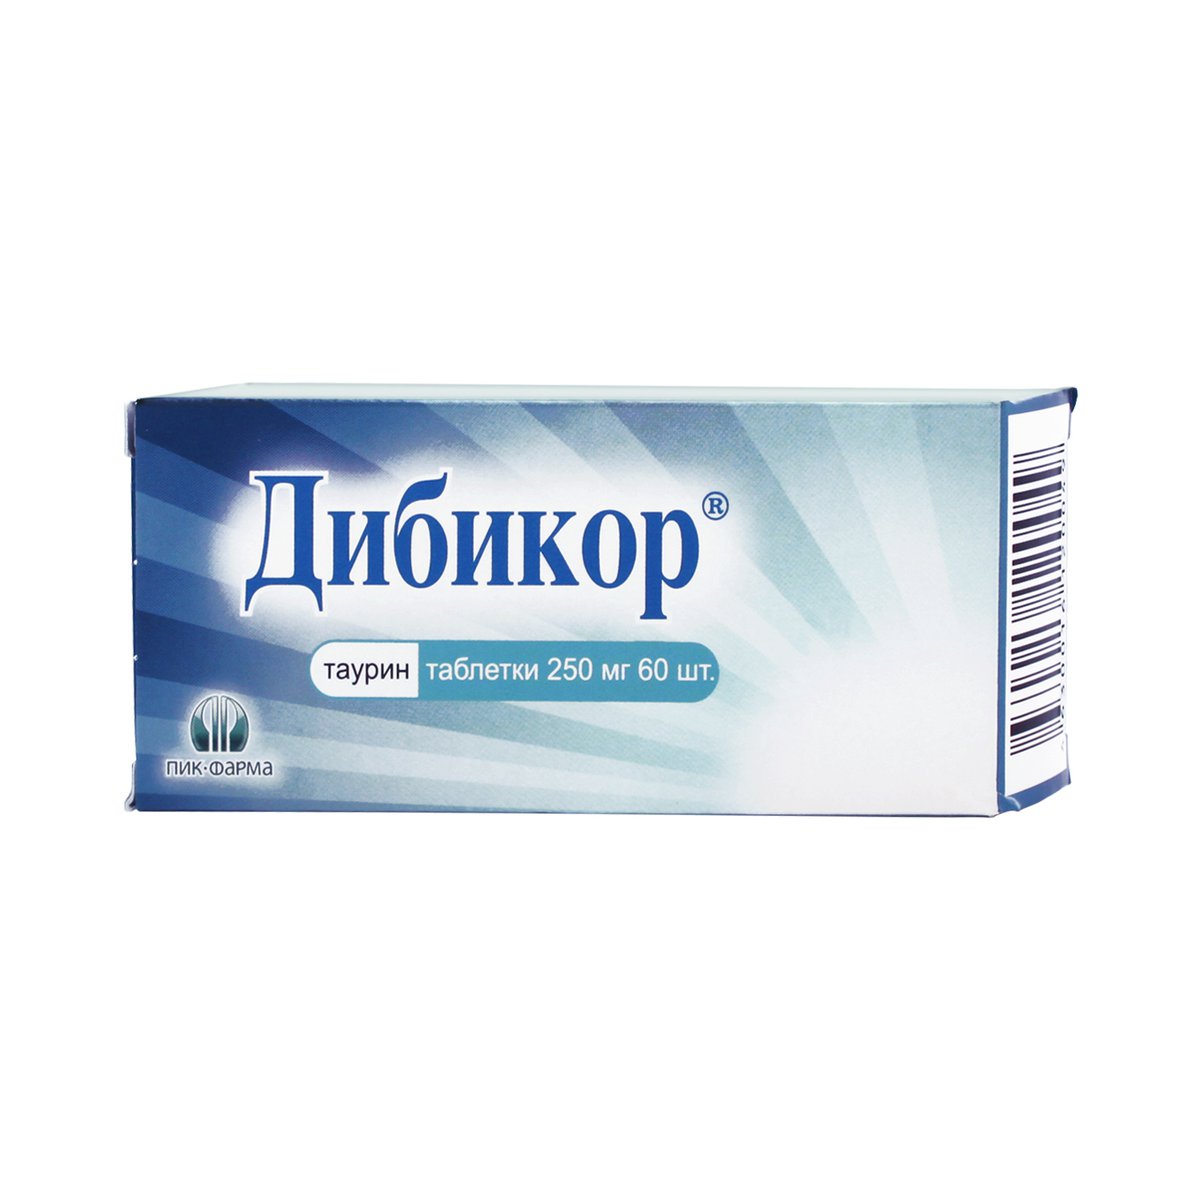 Дибикор (таблетки, 60 шт, 250 мг) - цена,  онлайн  .